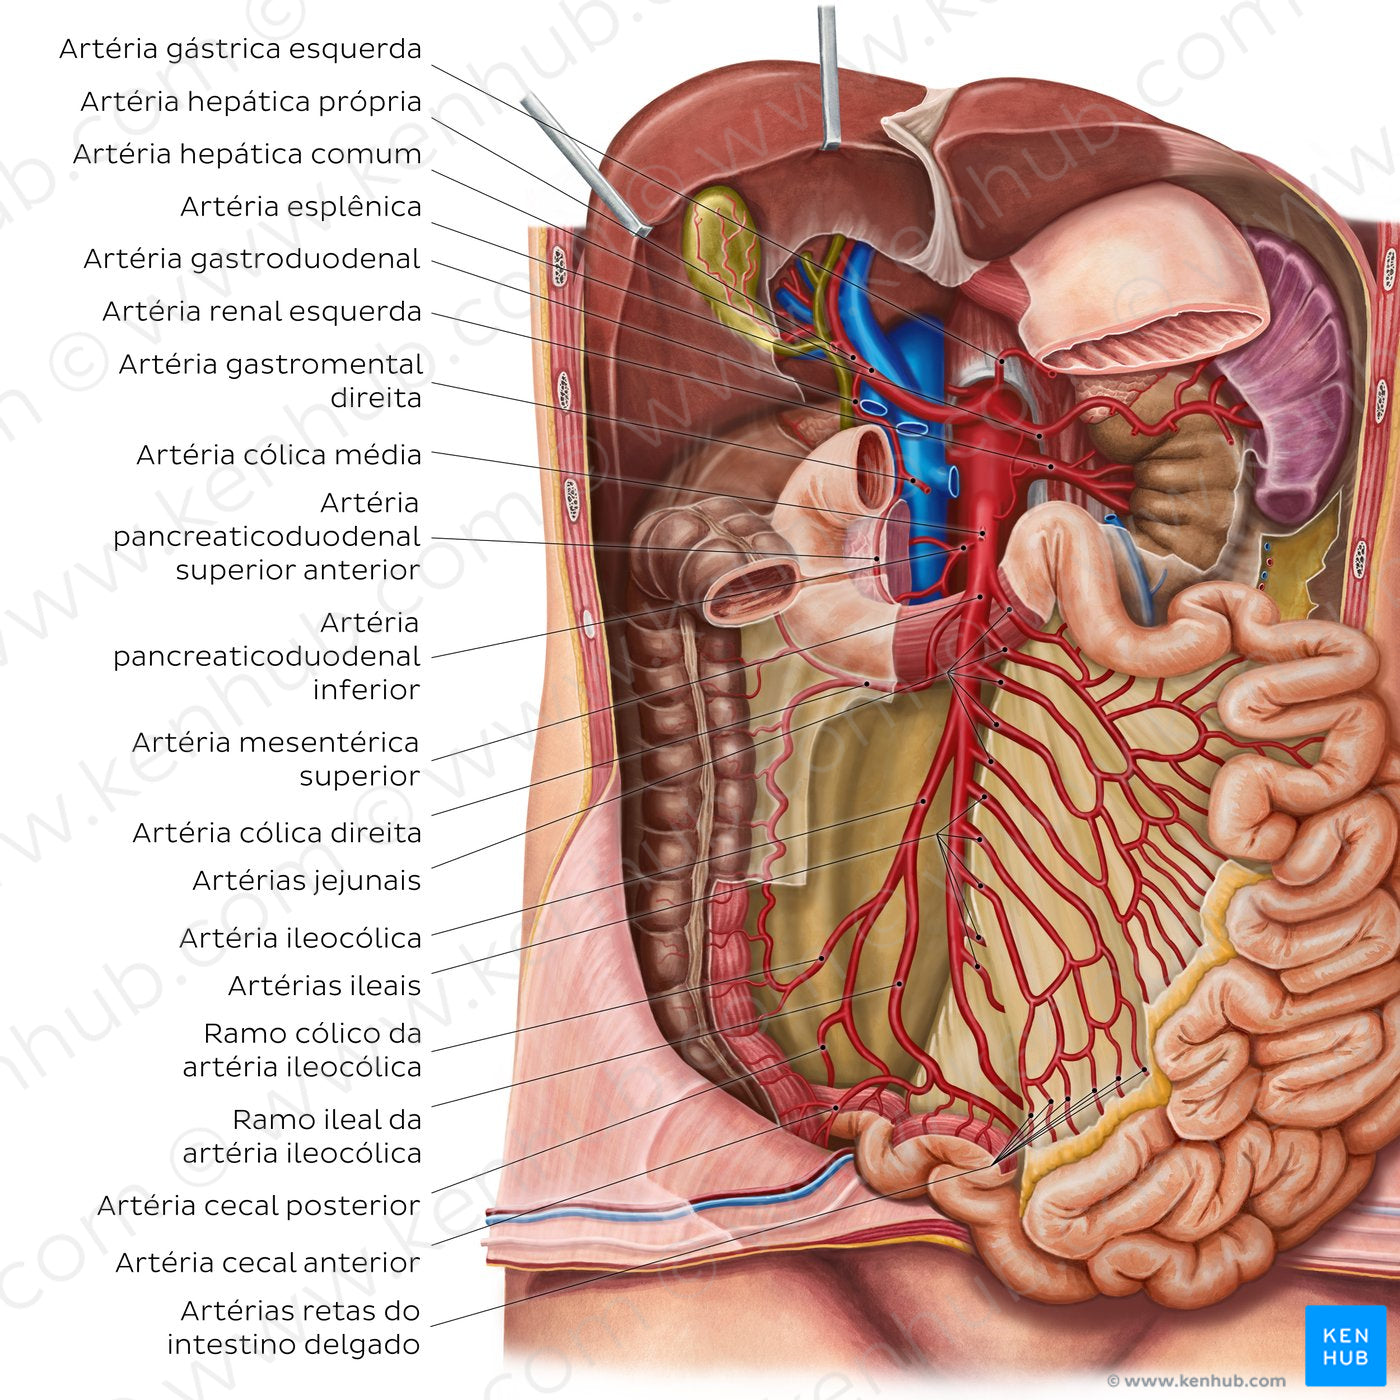 Arteries of the small intestine (Portuguese)